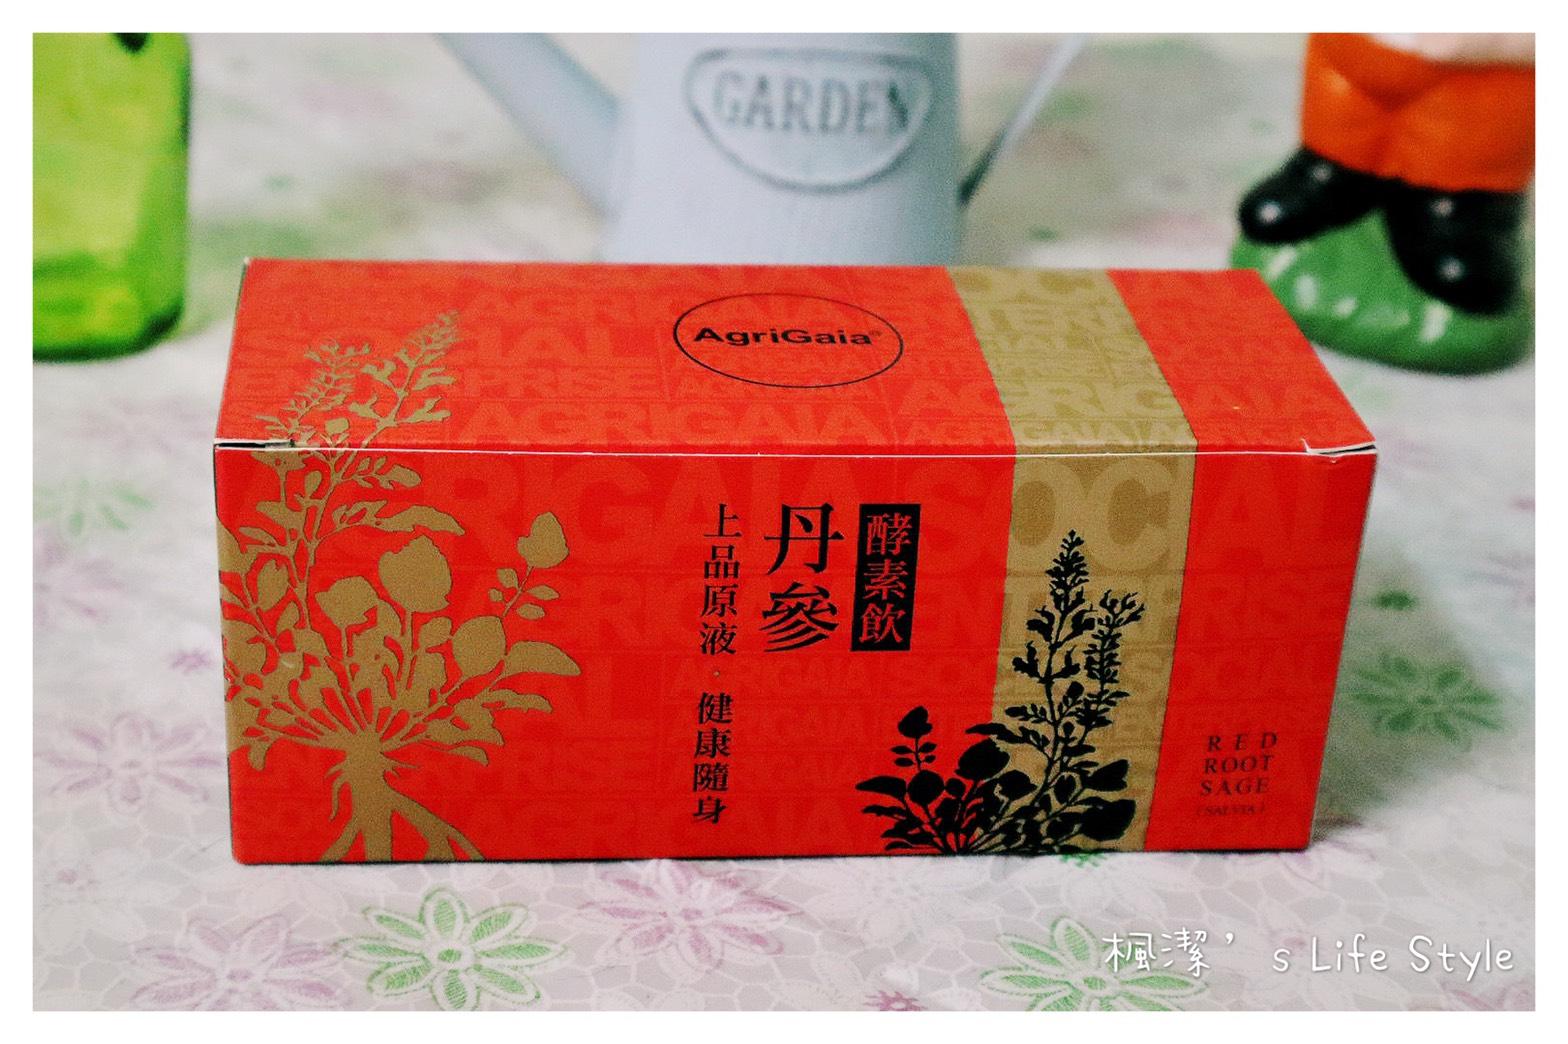 丹參酵素飲的外包裝設計是漂亮有質感的大紅色，上面的字體設計及圖案設計給人滿滿的漢方風格~